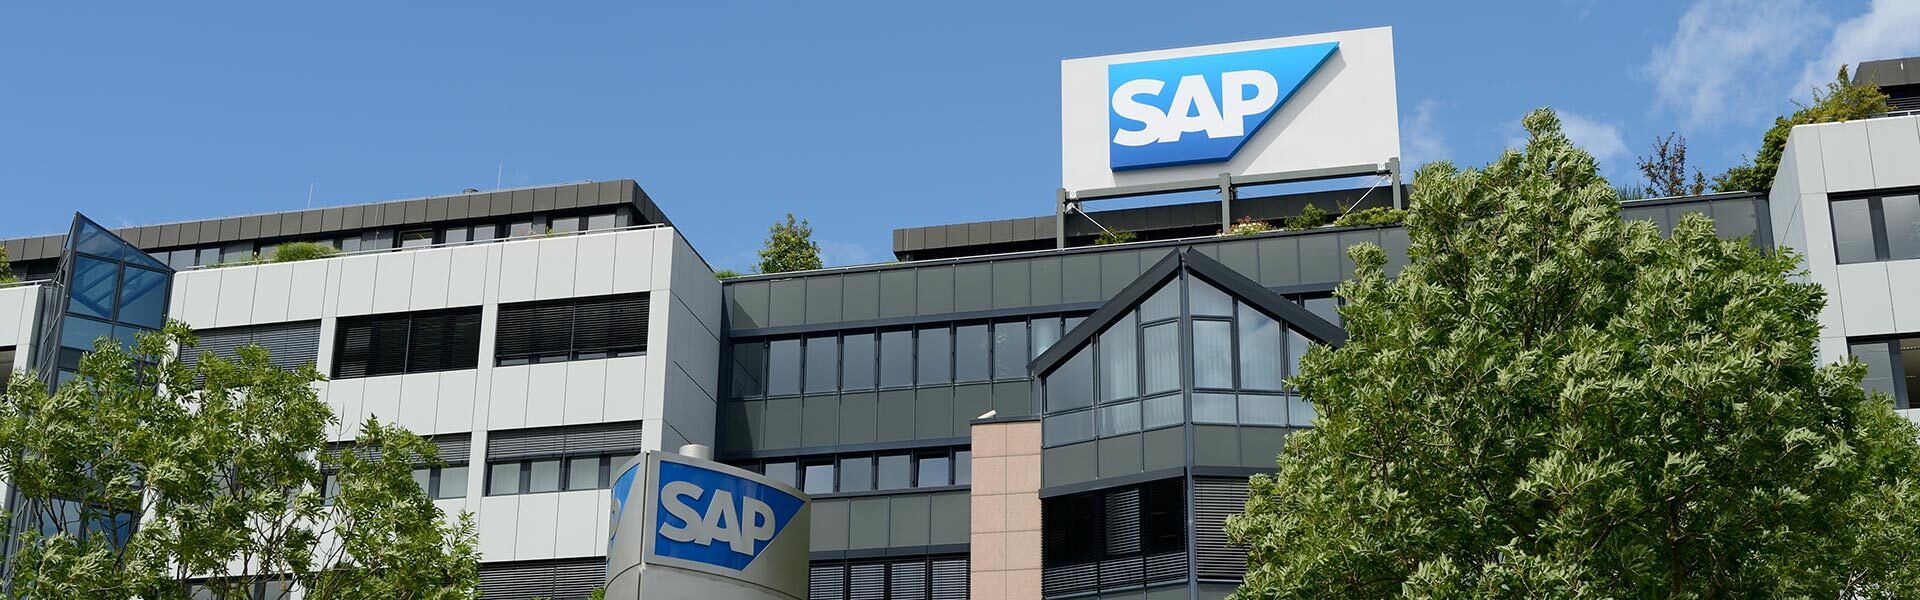 SAP、独立系リサーチ会社より エンタープライズ・データ・ファブリック・ソリューションのリーダーに認定